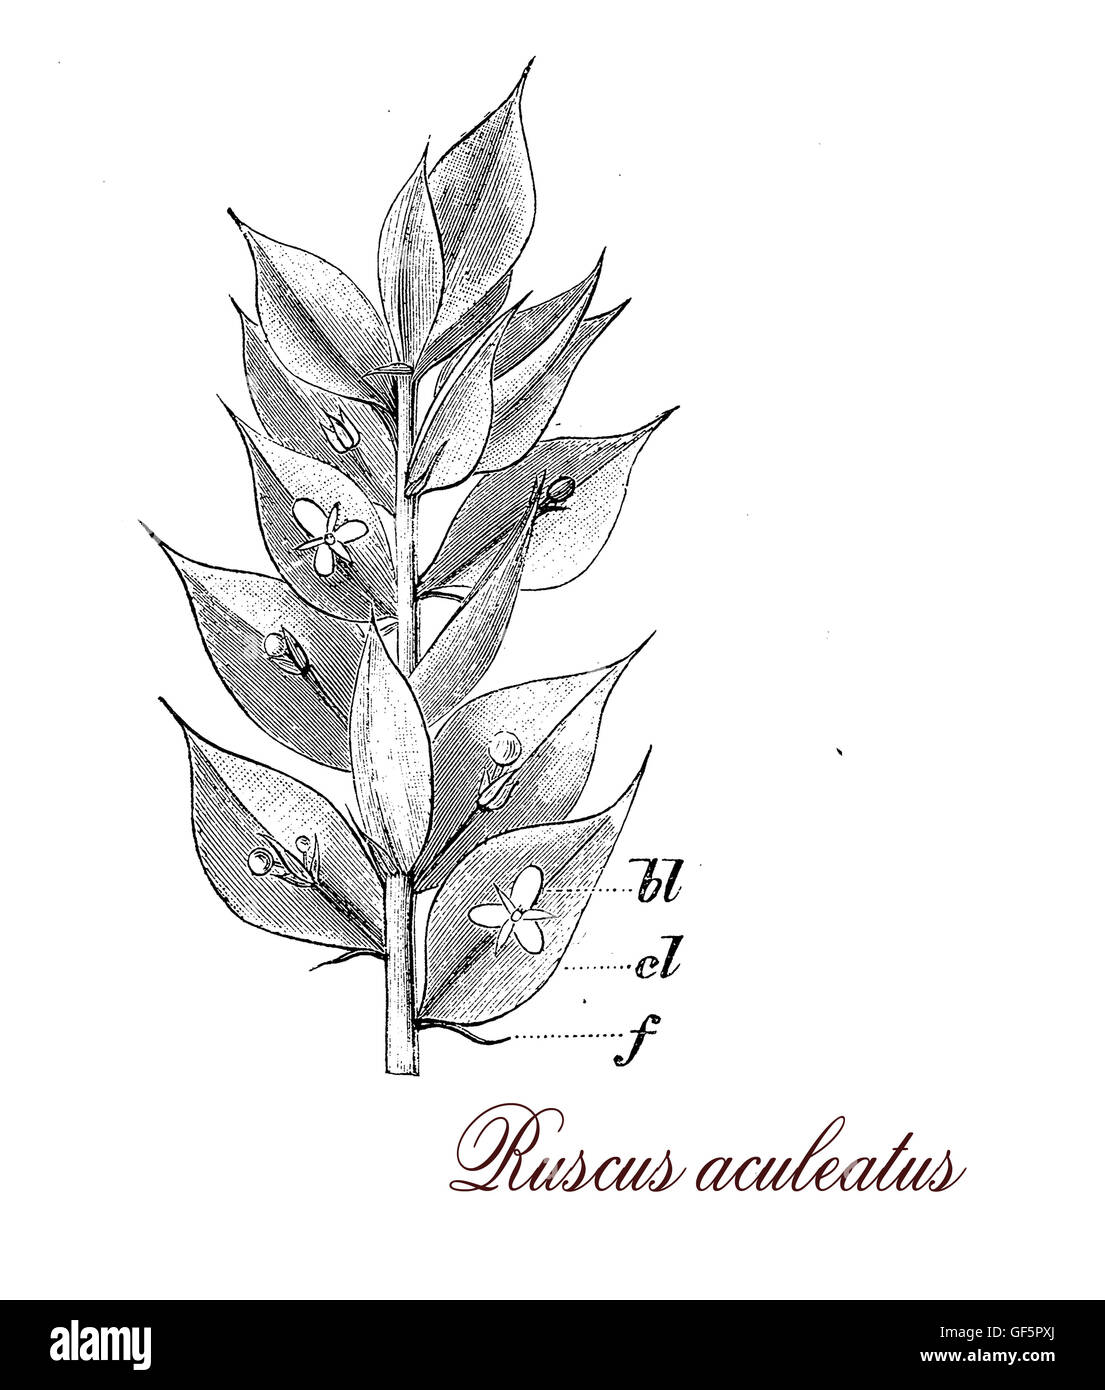 Ruscus aculeatus est un arbuste avec des feuilles garnies d'épines plantés comme décoration de jardin, les fruits sont des baies rouges utilisées comme semences d'oiseaux Banque D'Images